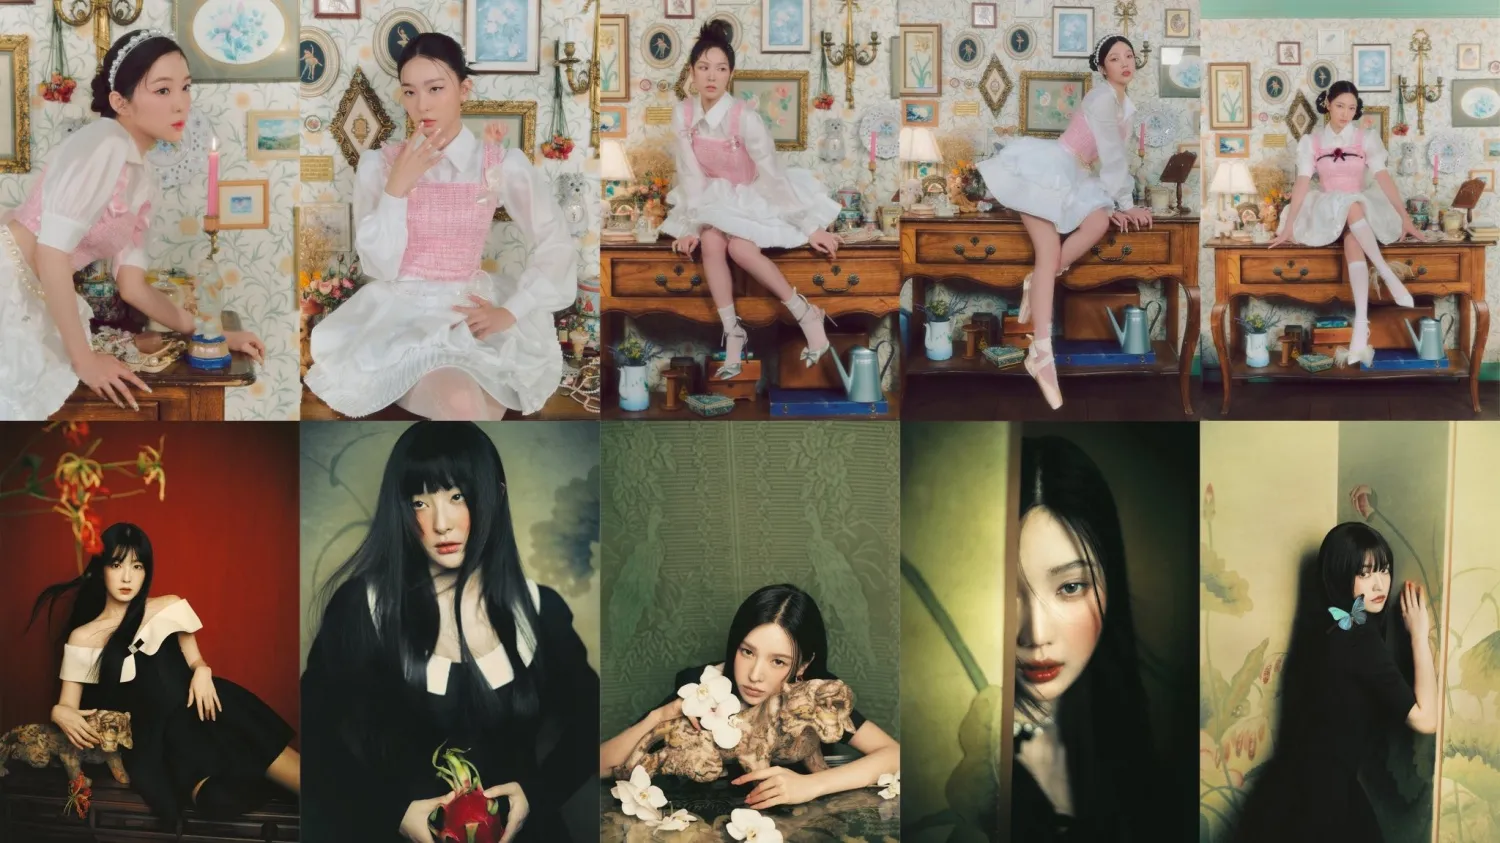 Red Velvet 的《Chill Kill》預告片好評如潮​​：“他們是真正的概念女王”